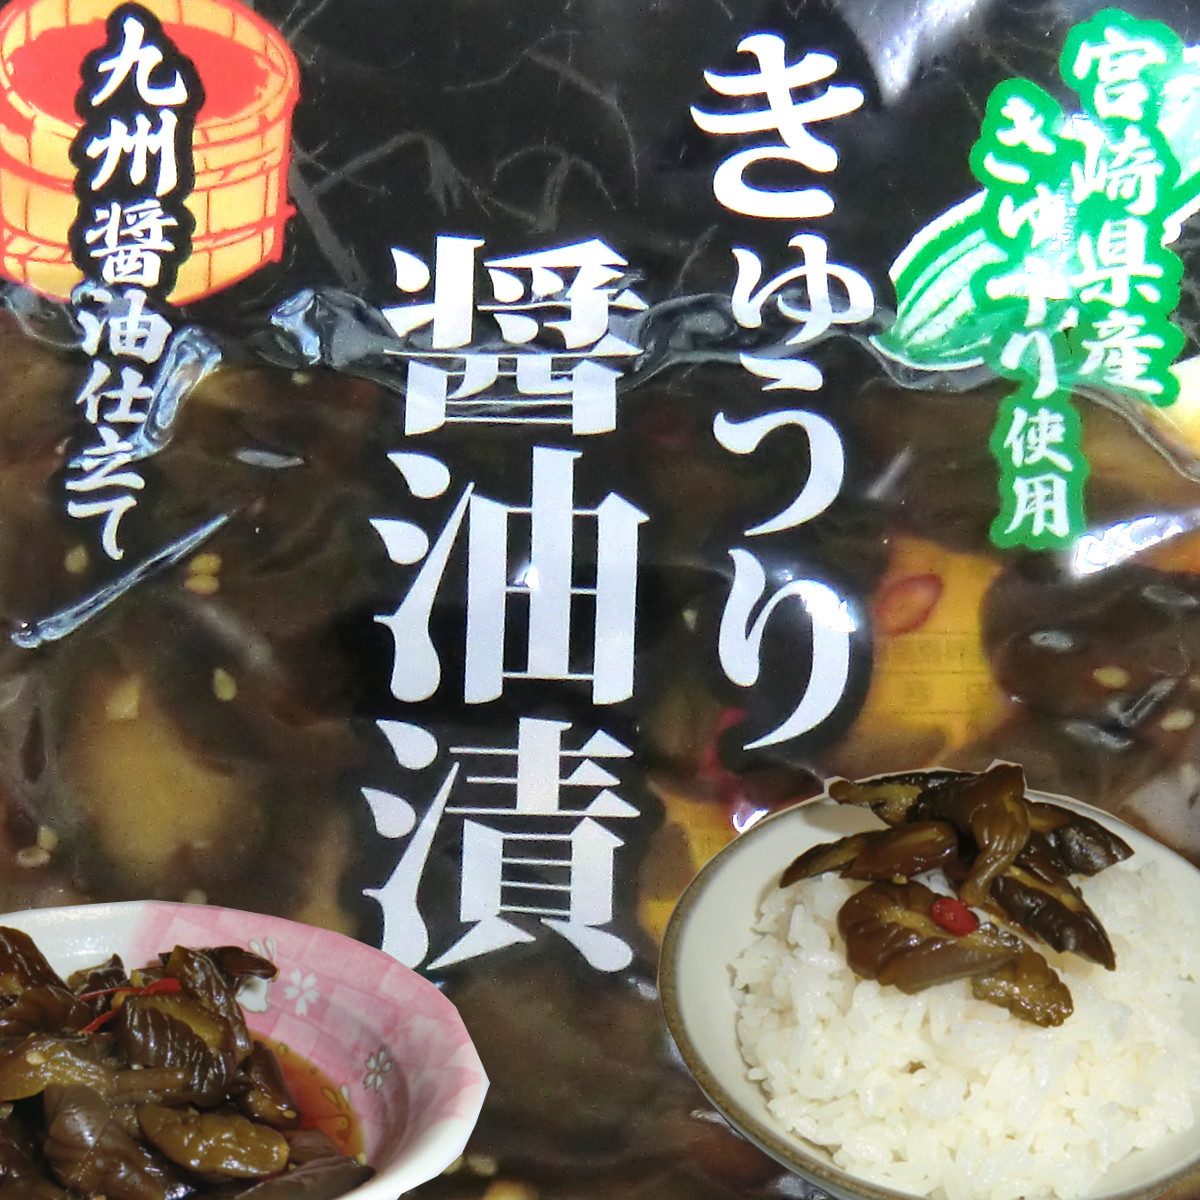  Miyazaki. солености tsukemono огурец соевый соус .100g×1 пакет рис. .. Miyazaki префектура производство огурец рисовый шарик онигири гарнир карри рис. есть .. чай ... sake. . бесплатная доставка 